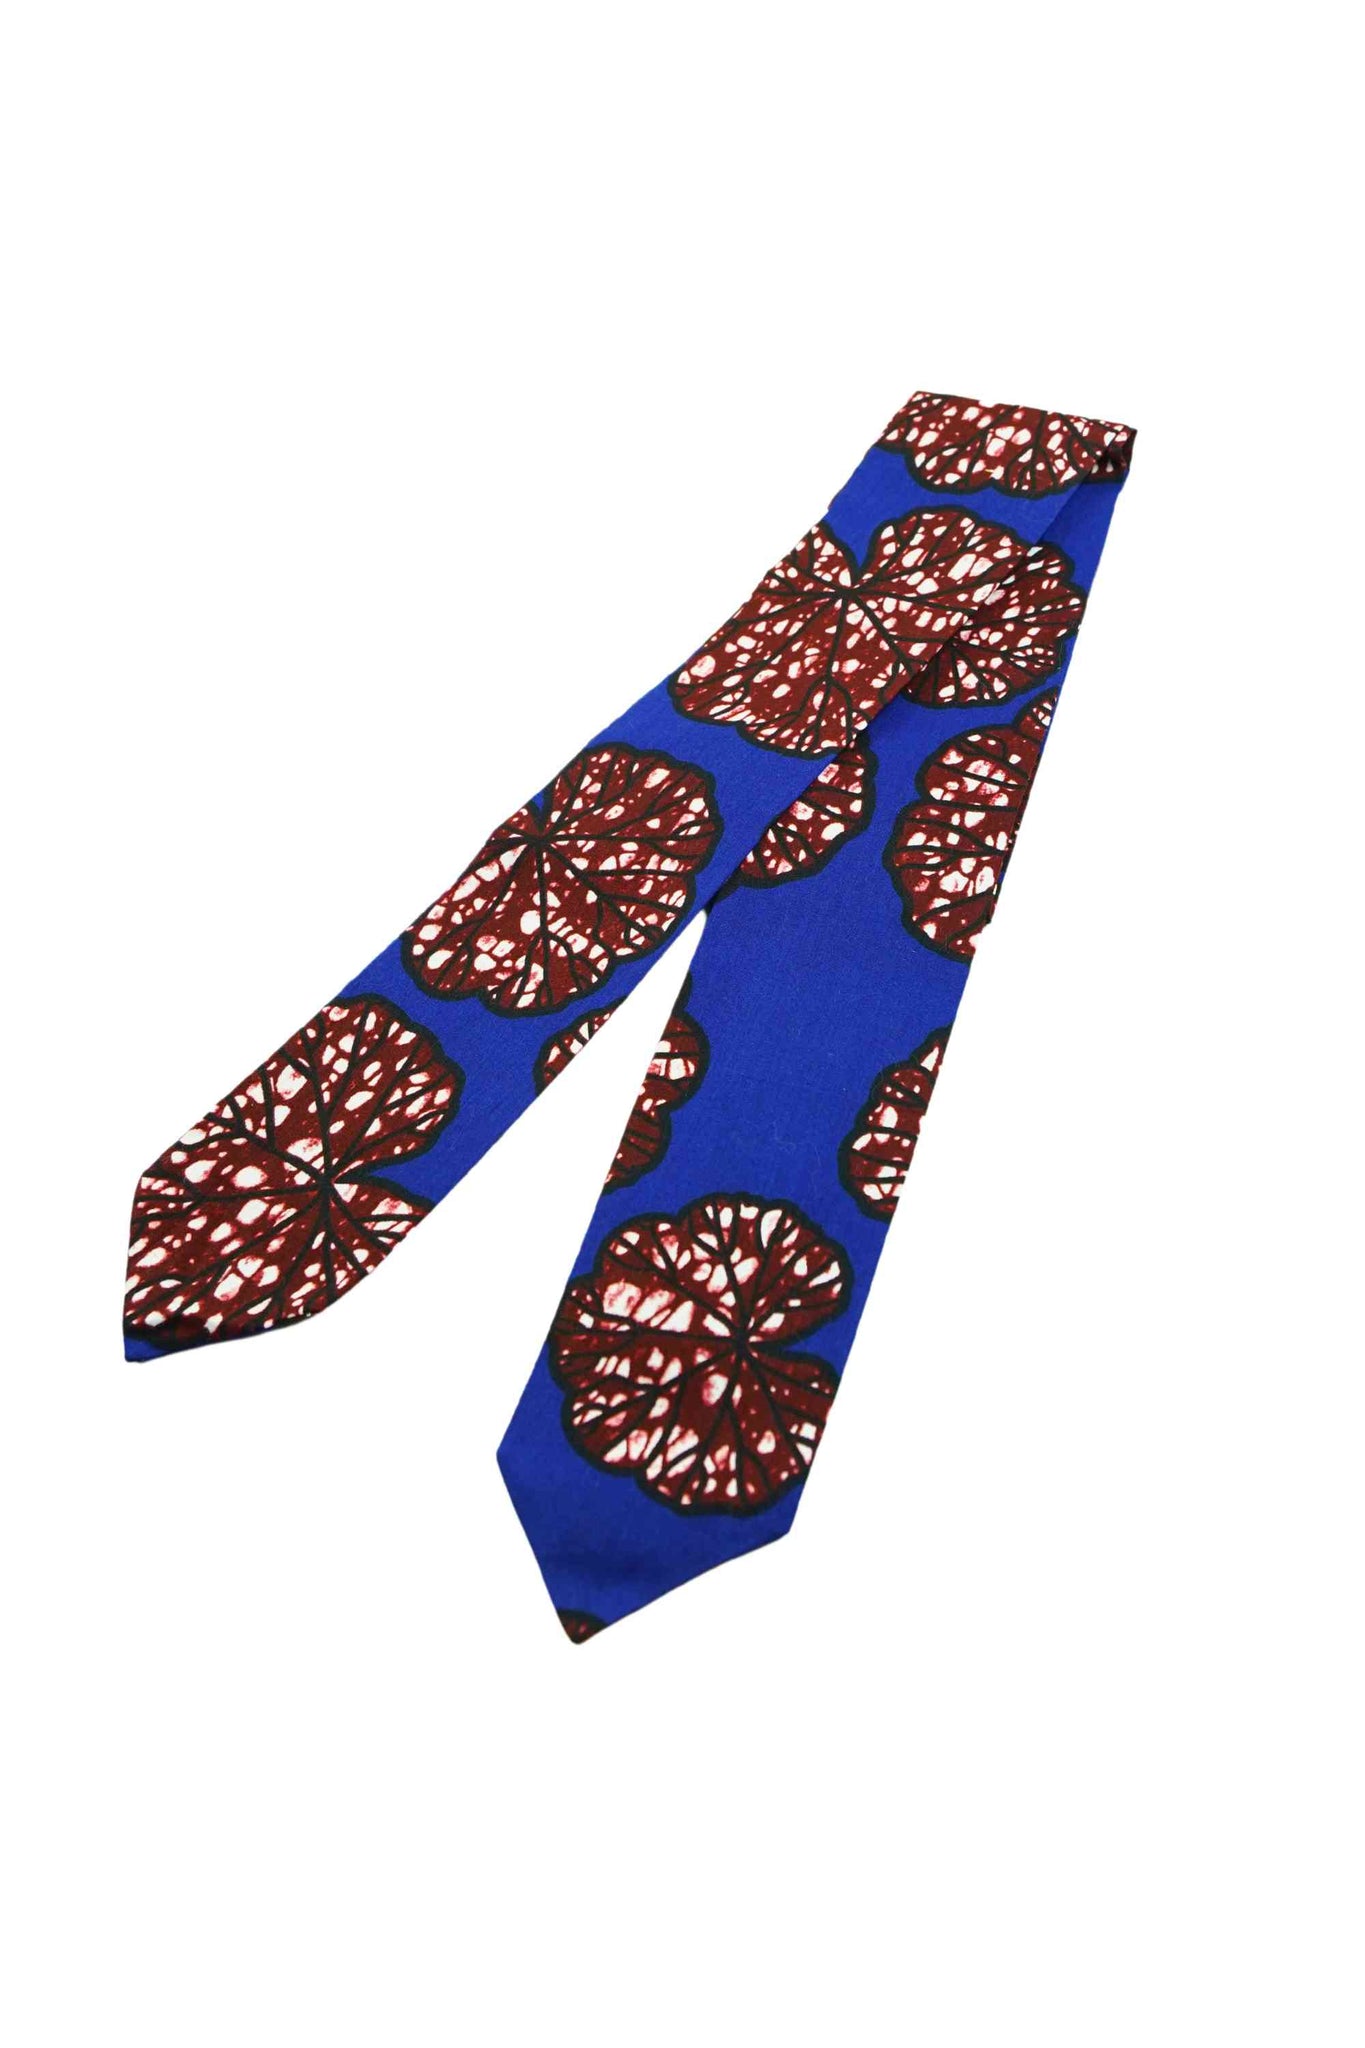 Blue / White / Brown Tie-Up Headband